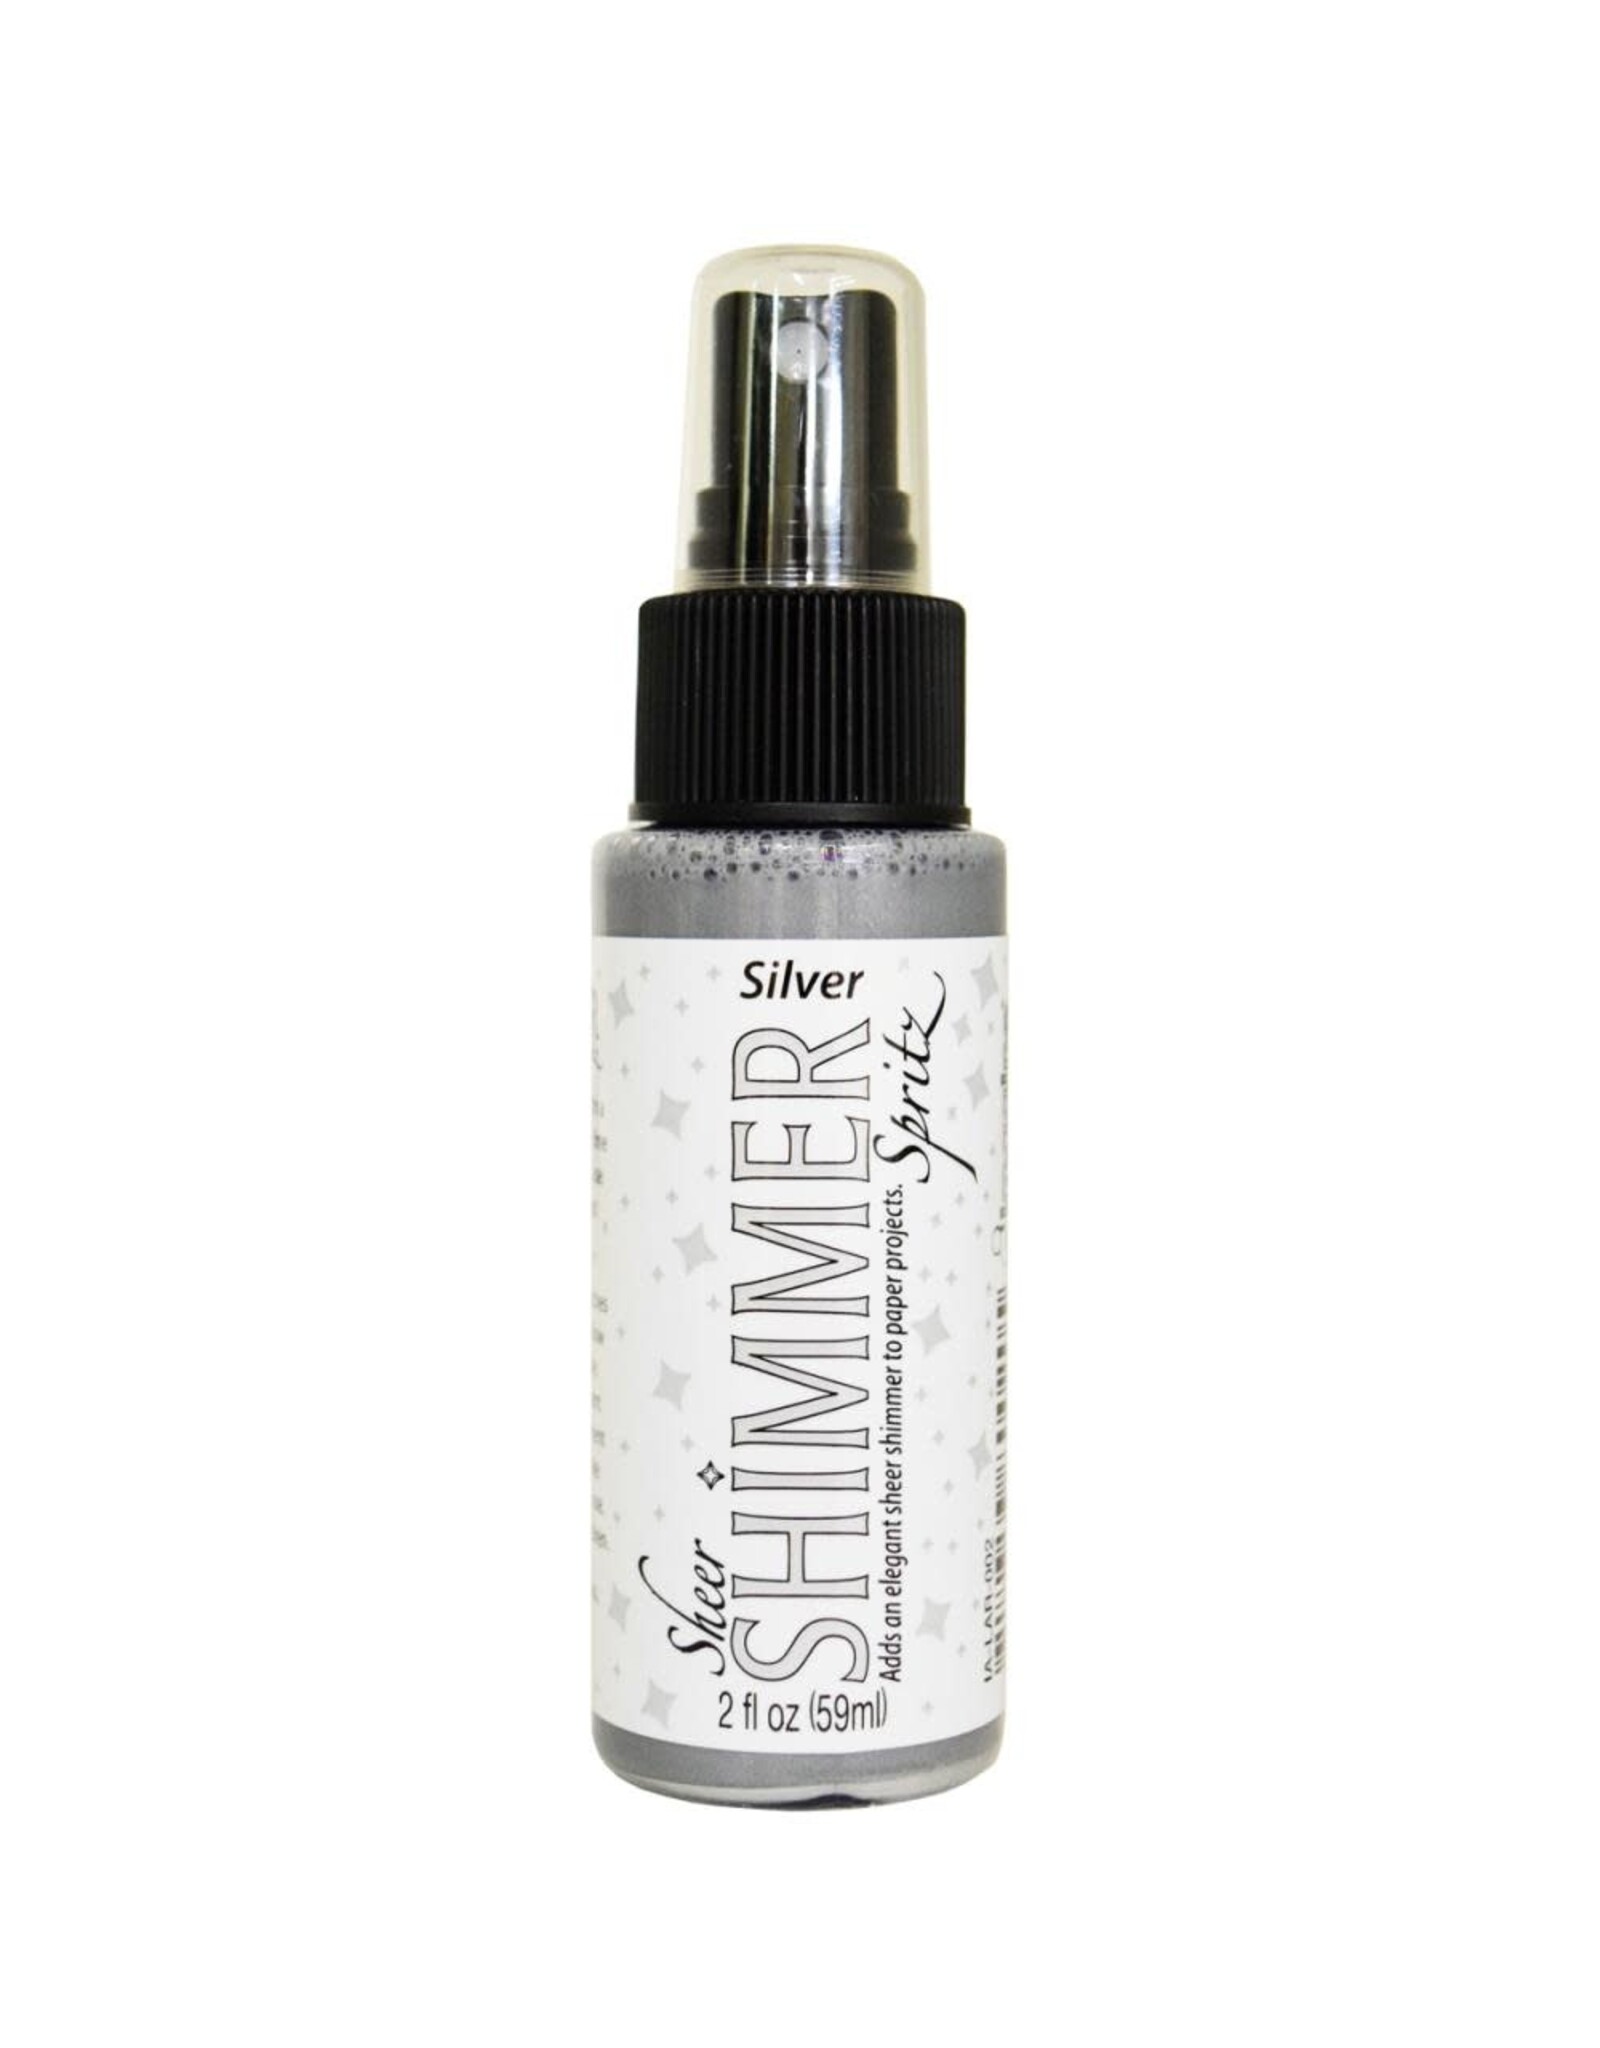 Imagine Shimmer Spritz 2 oz - Silver